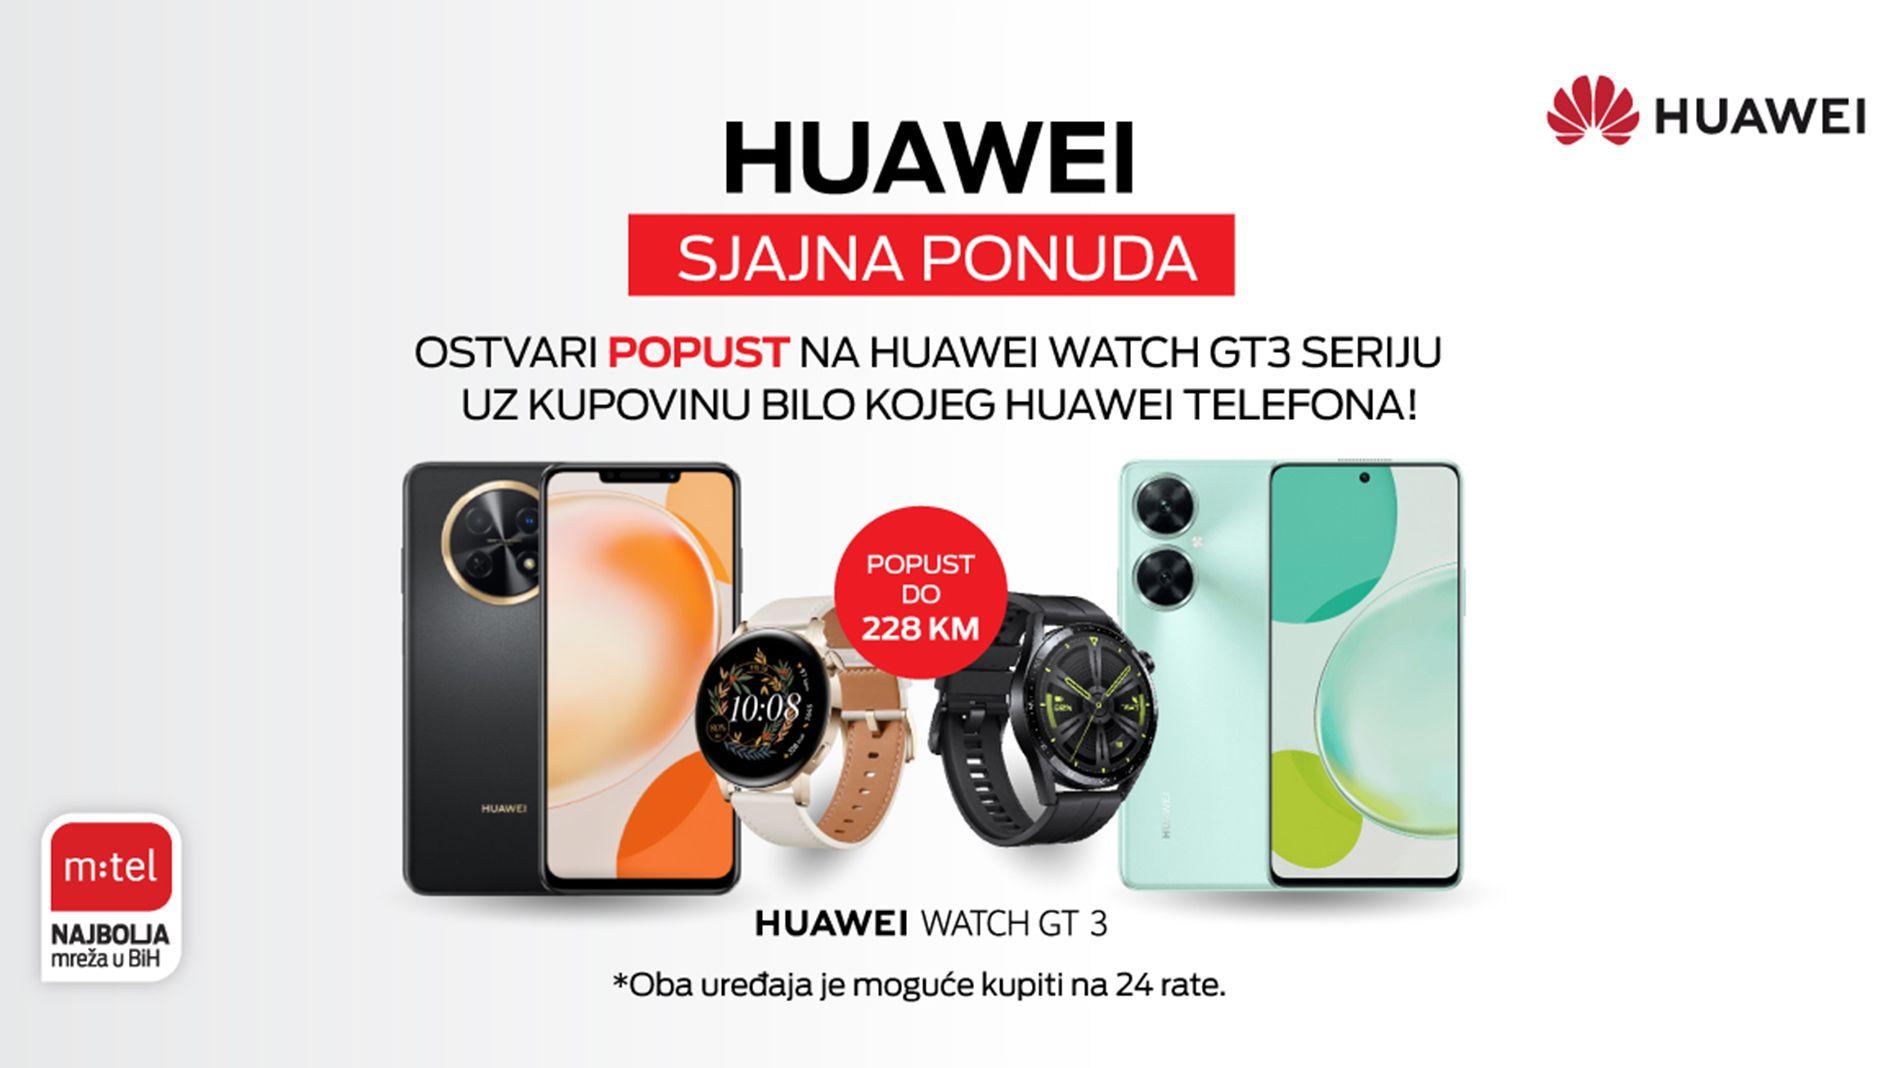 Savršena kombinacija – Huawei telefon i pametni sat sa popustom